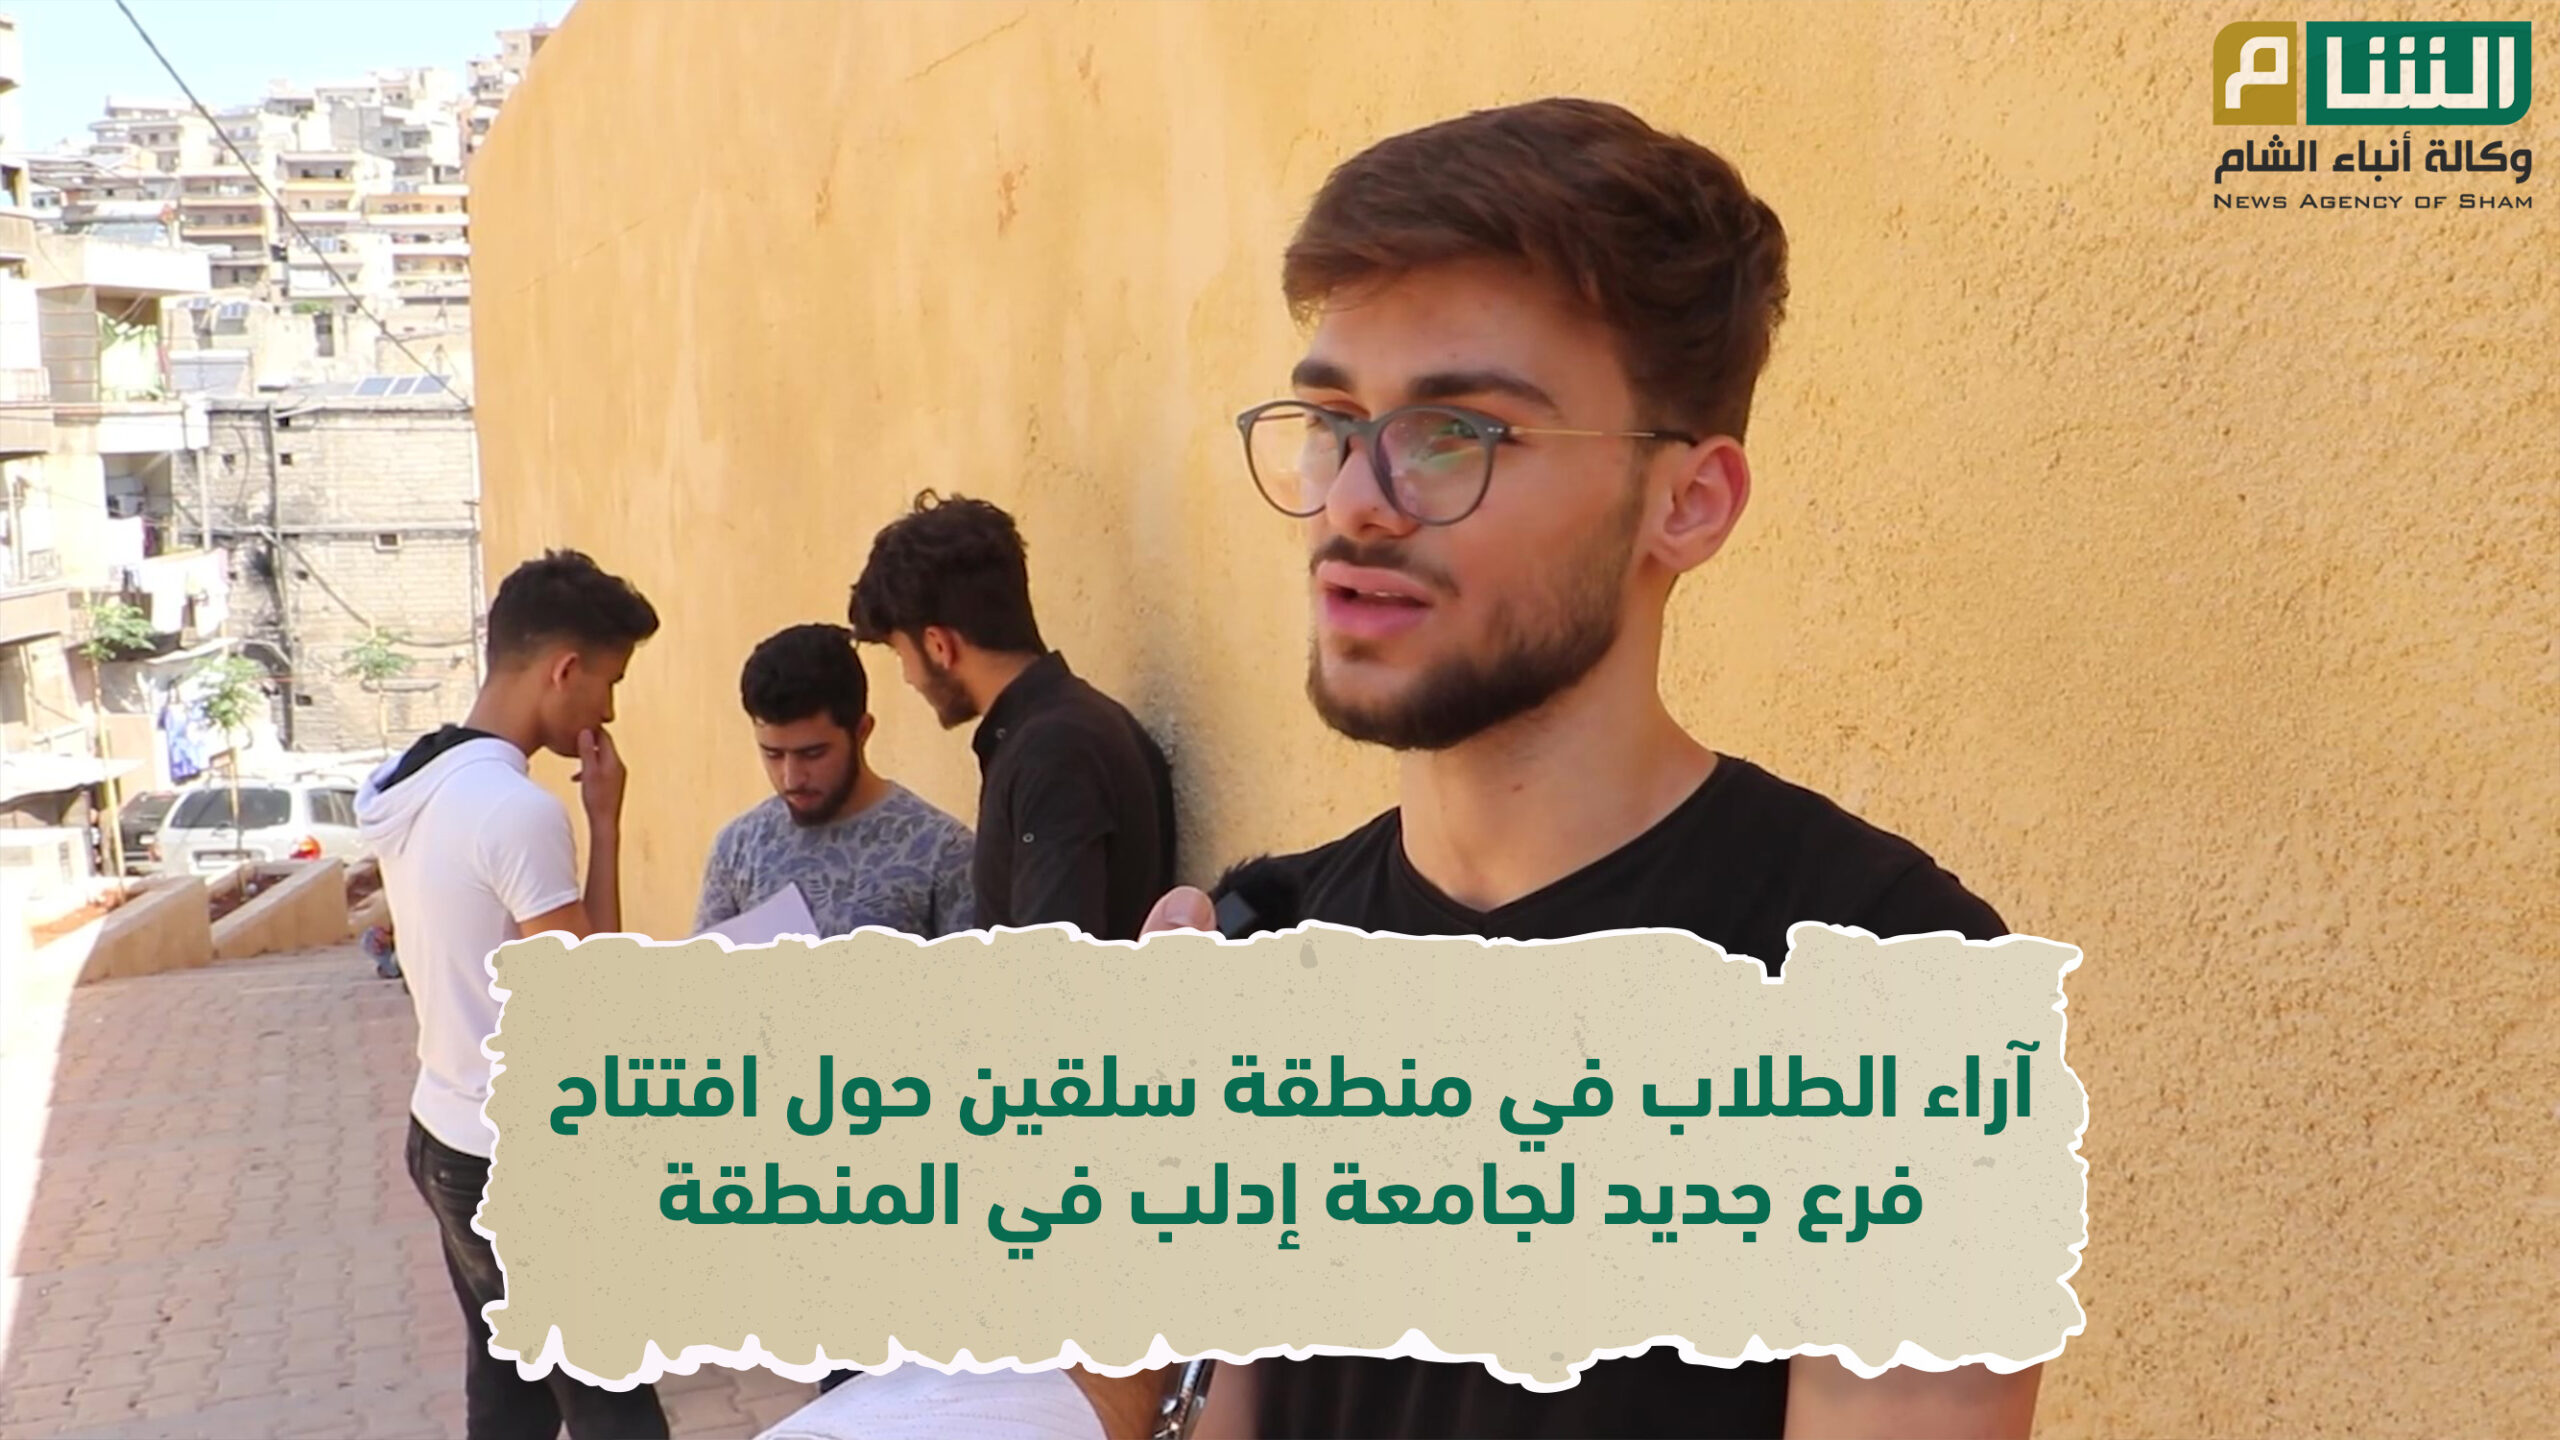 آراء الطلاب حول افتتاح فرع لجامعة إدلب بمدينة سلقين